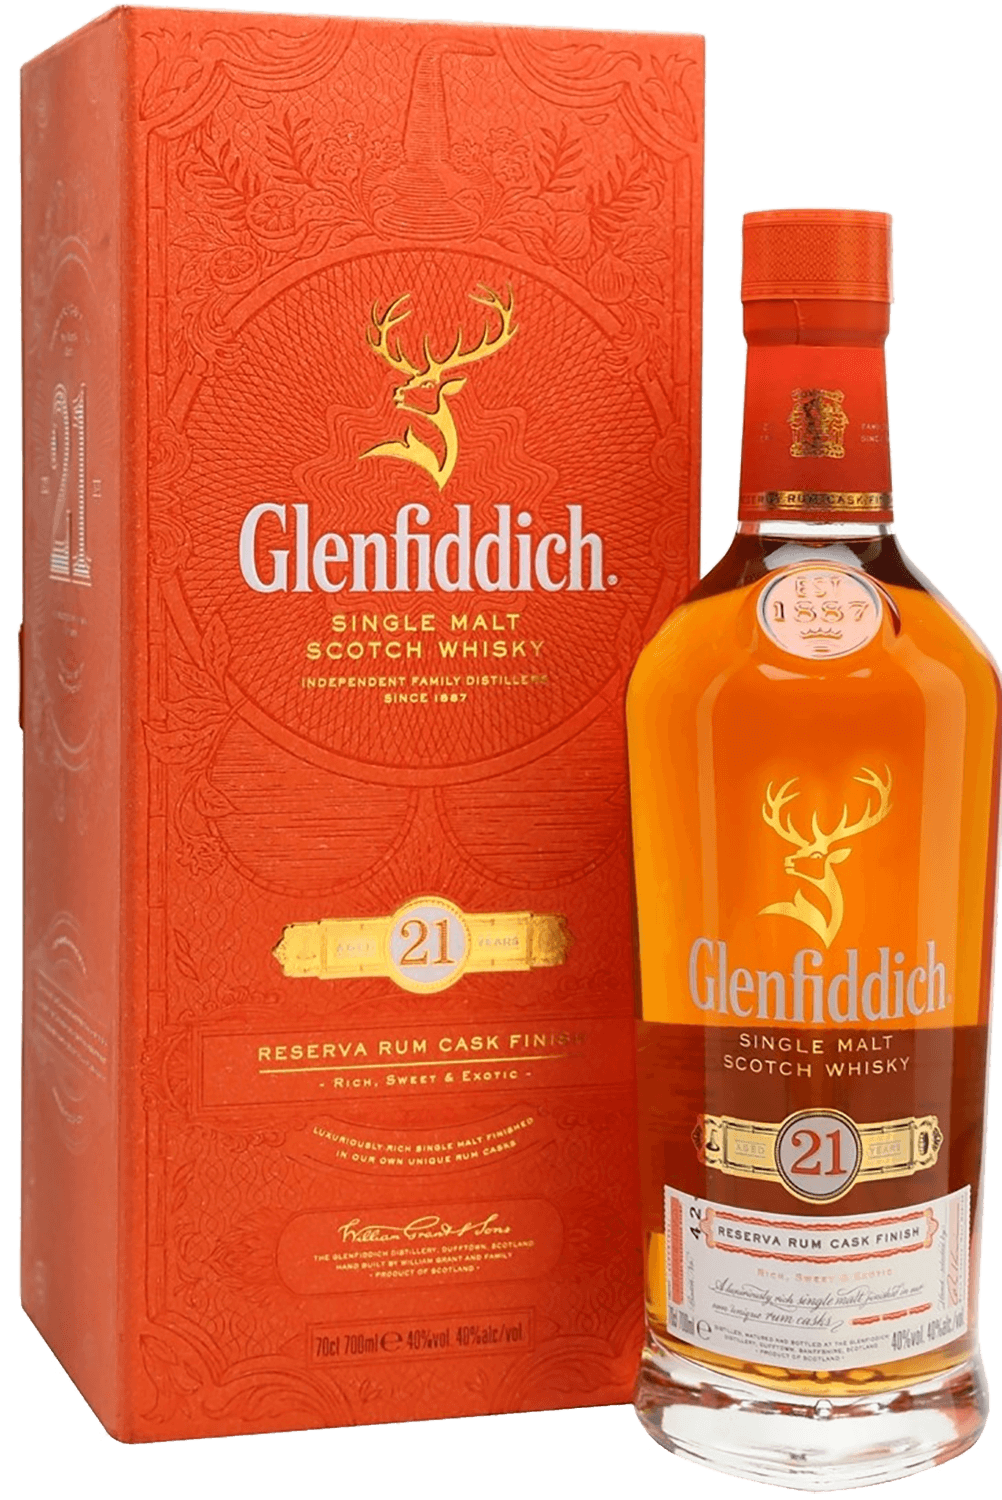 Glenfiddich Single Malt Scotch Whisky 21 yo (gift box) glenfiddich project хх single malt scotch whisky gift box